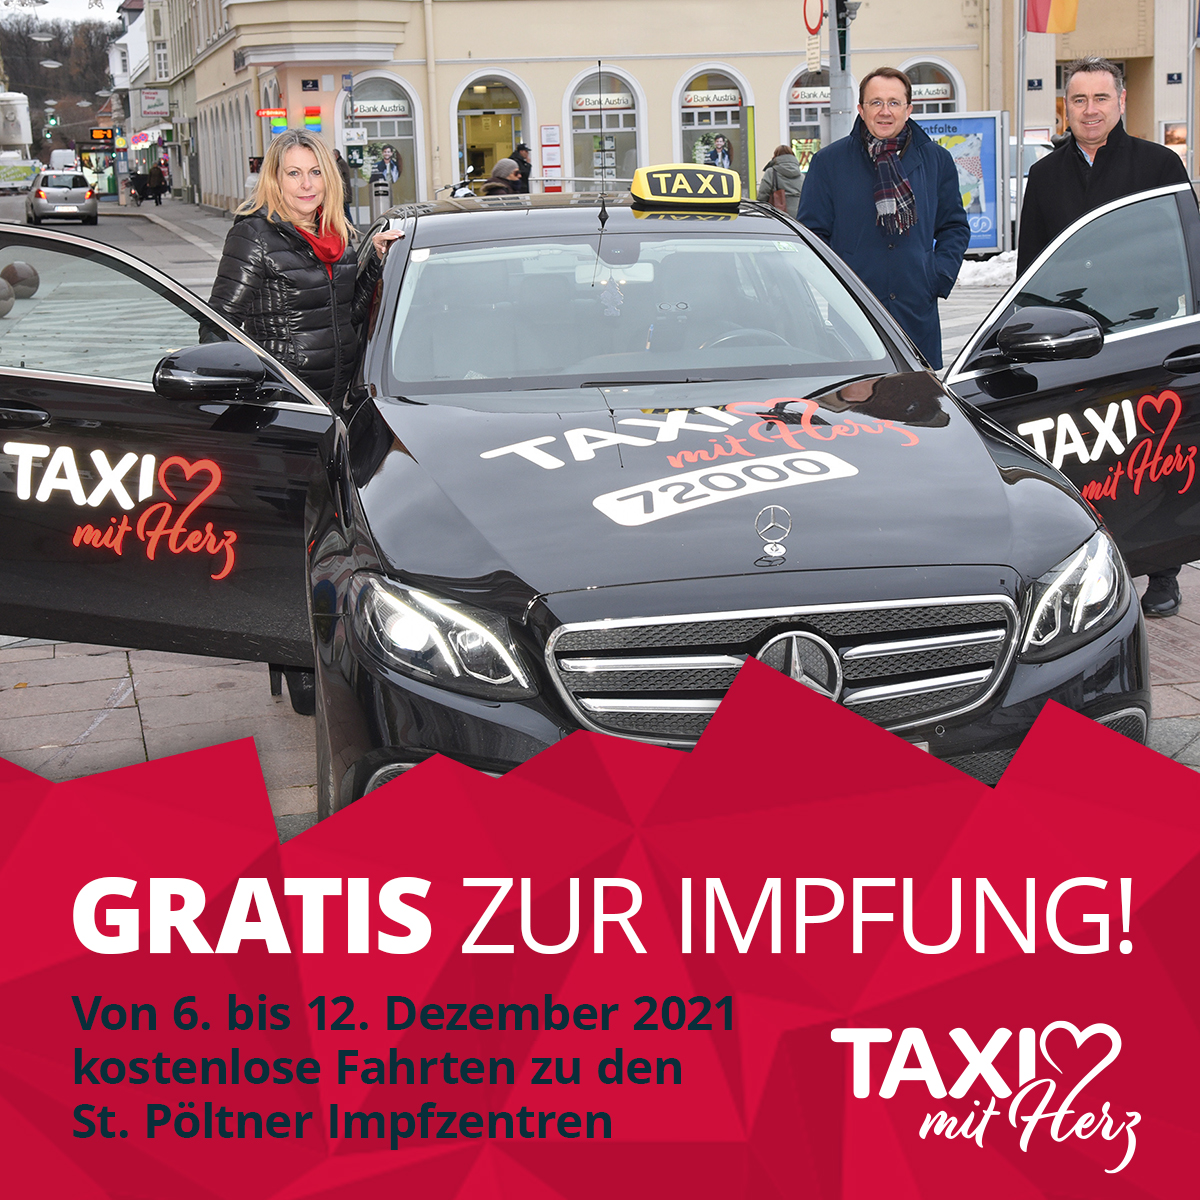 Bürgermeister Matthias Stadler freut sich über die Aktion von Taxi mit Herz Geschäftsführung Barbara Frühwald und Christoph Brunnauer